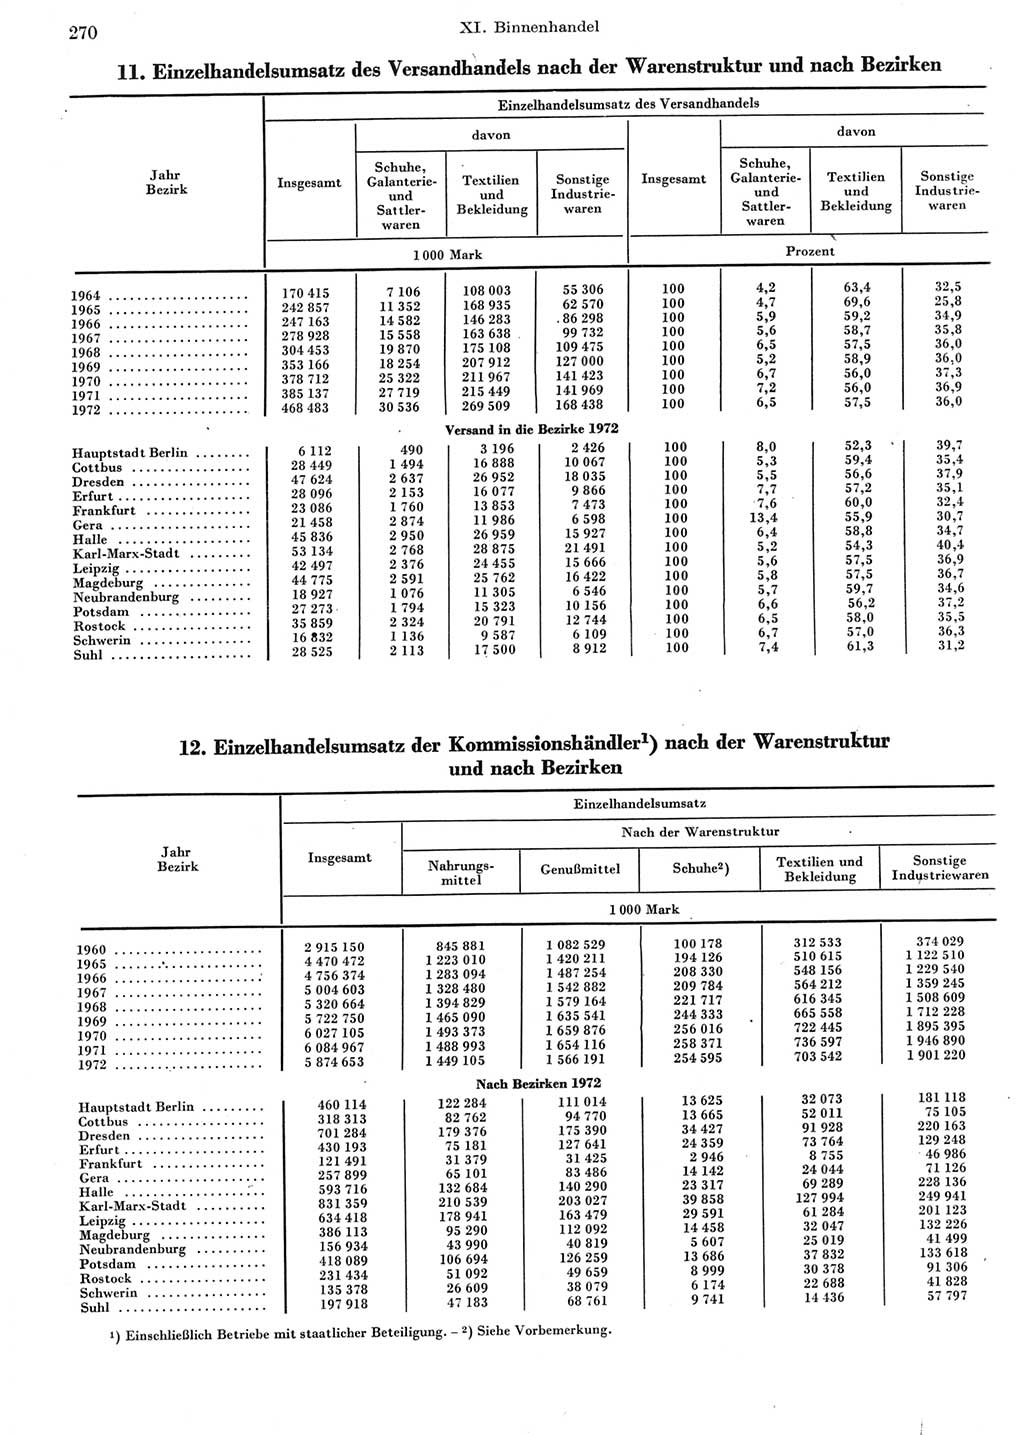 Statistisches Jahrbuch der Deutschen Demokratischen Republik (DDR) 1973, Seite 270 (Stat. Jb. DDR 1973, S. 270)